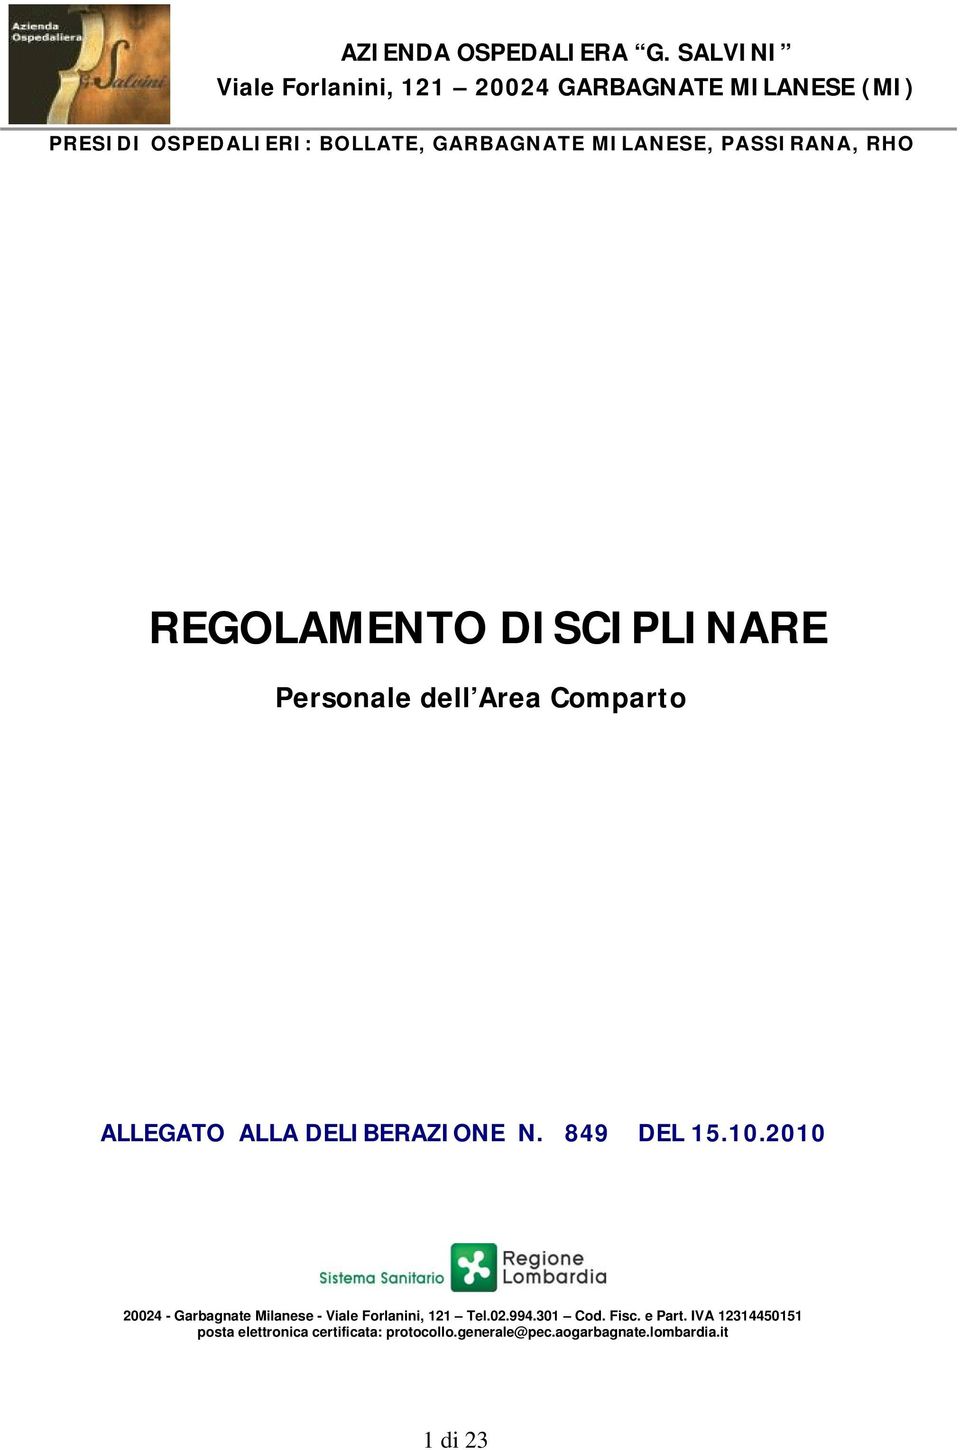 PASSIRANA, RHO REGOLAMENTO DISCIPLINARE Personale dell Area Comparto ALLEGATO ALLA DELIBERAZIONE N. 849 DEL 15.